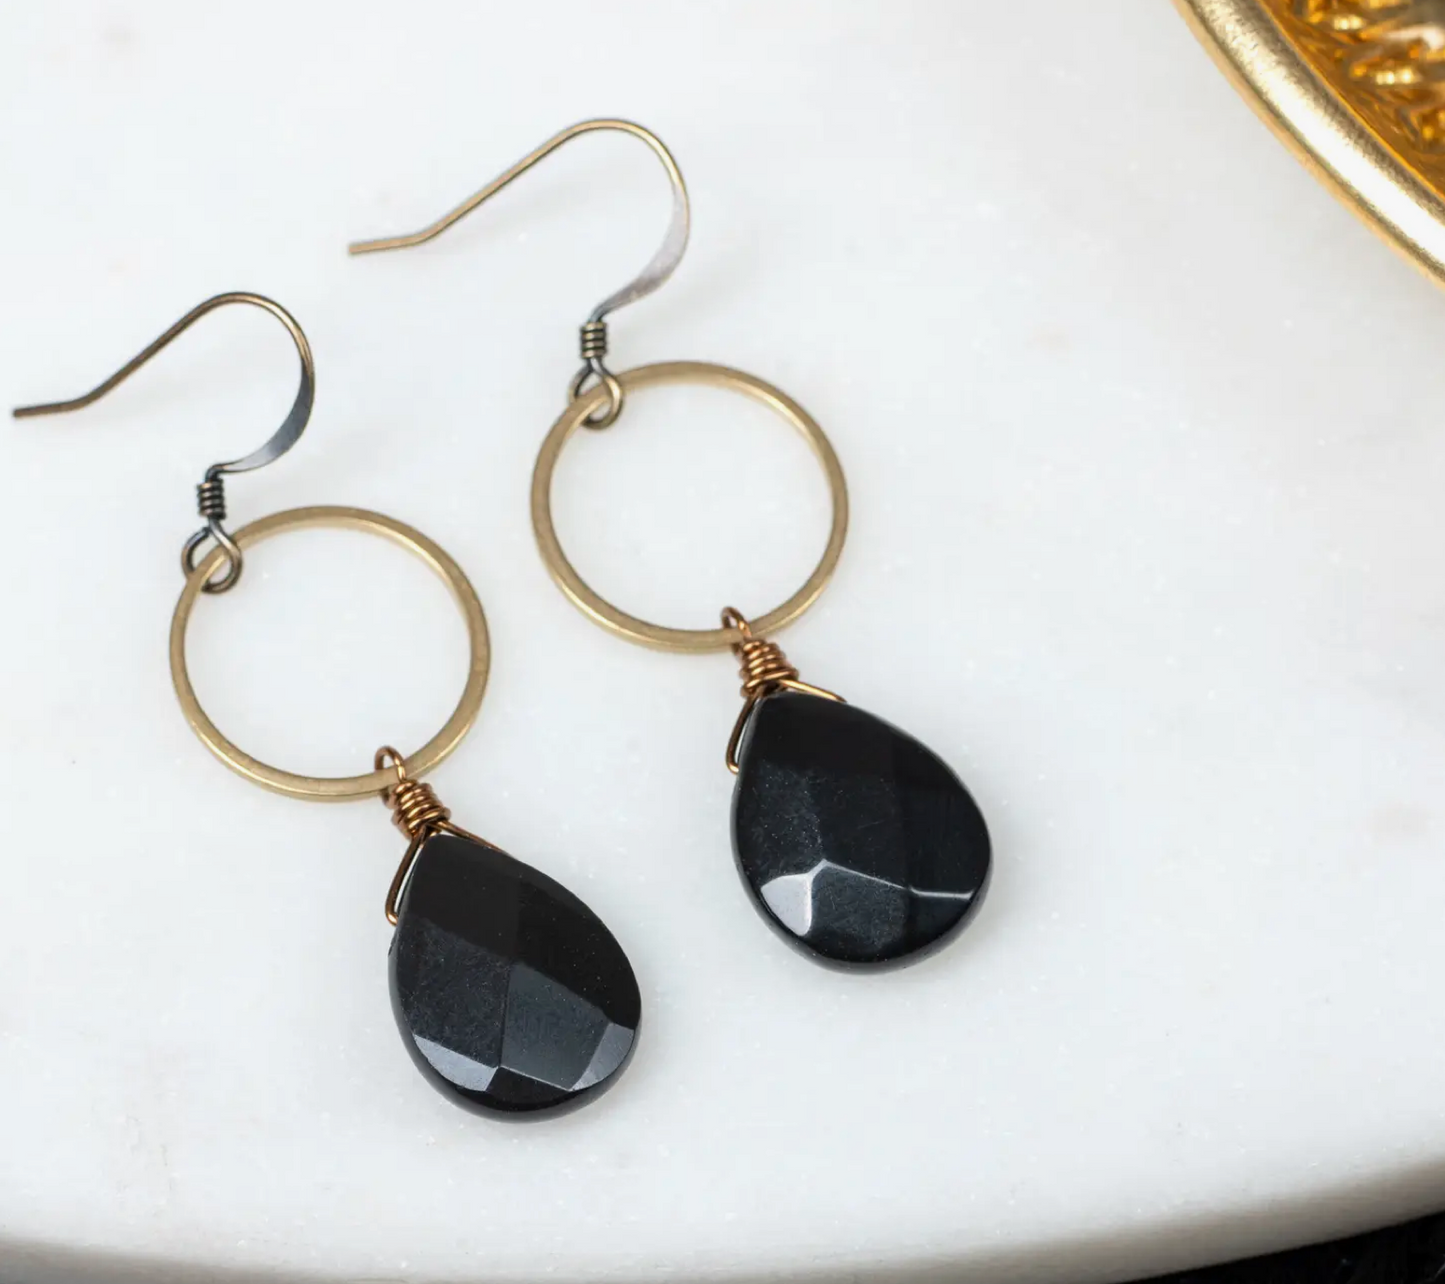 Black Onyx Teardrop Hoop Earring - Premium Earrings from EDGY PETAL - Just $42! Shop now at Three Blessed Gems